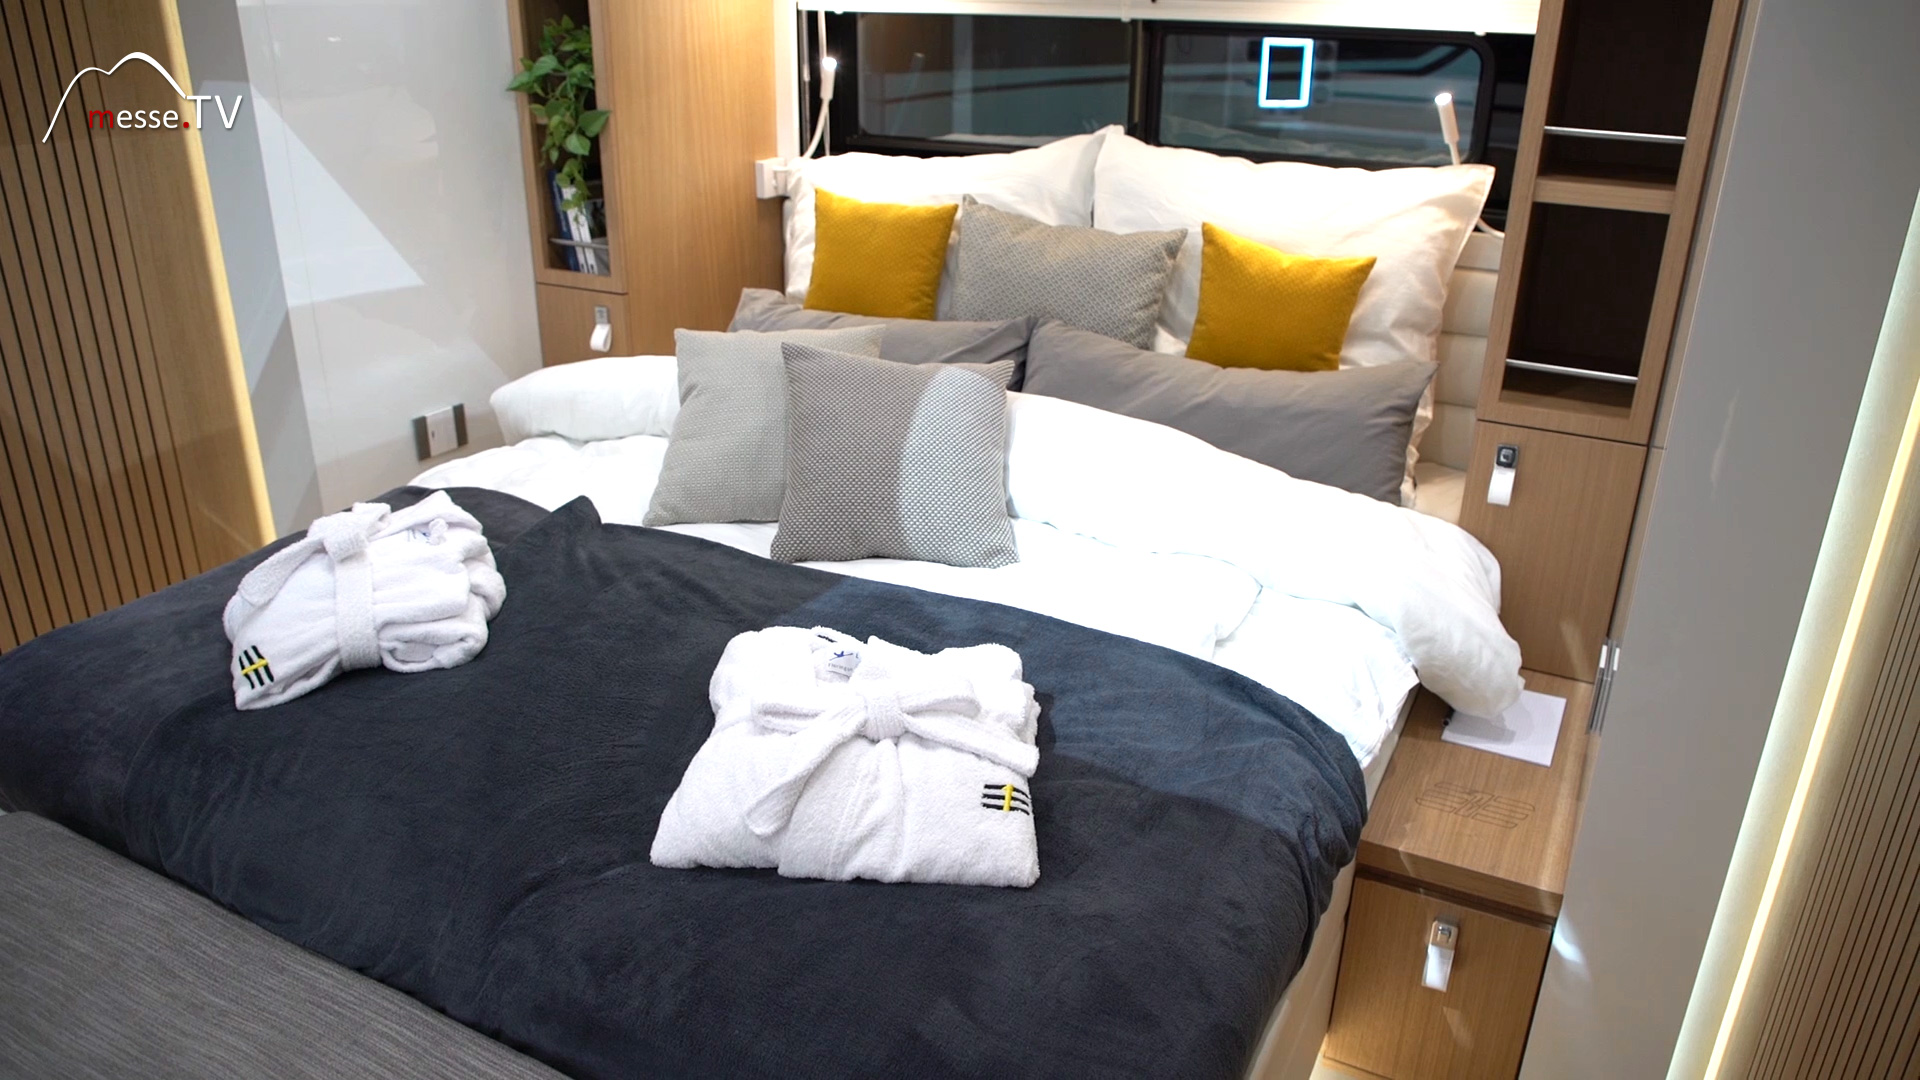 Eila Sleeping Area 5 Star Camping Suite on wheels Caravan Salon 2020 Dusseldorf